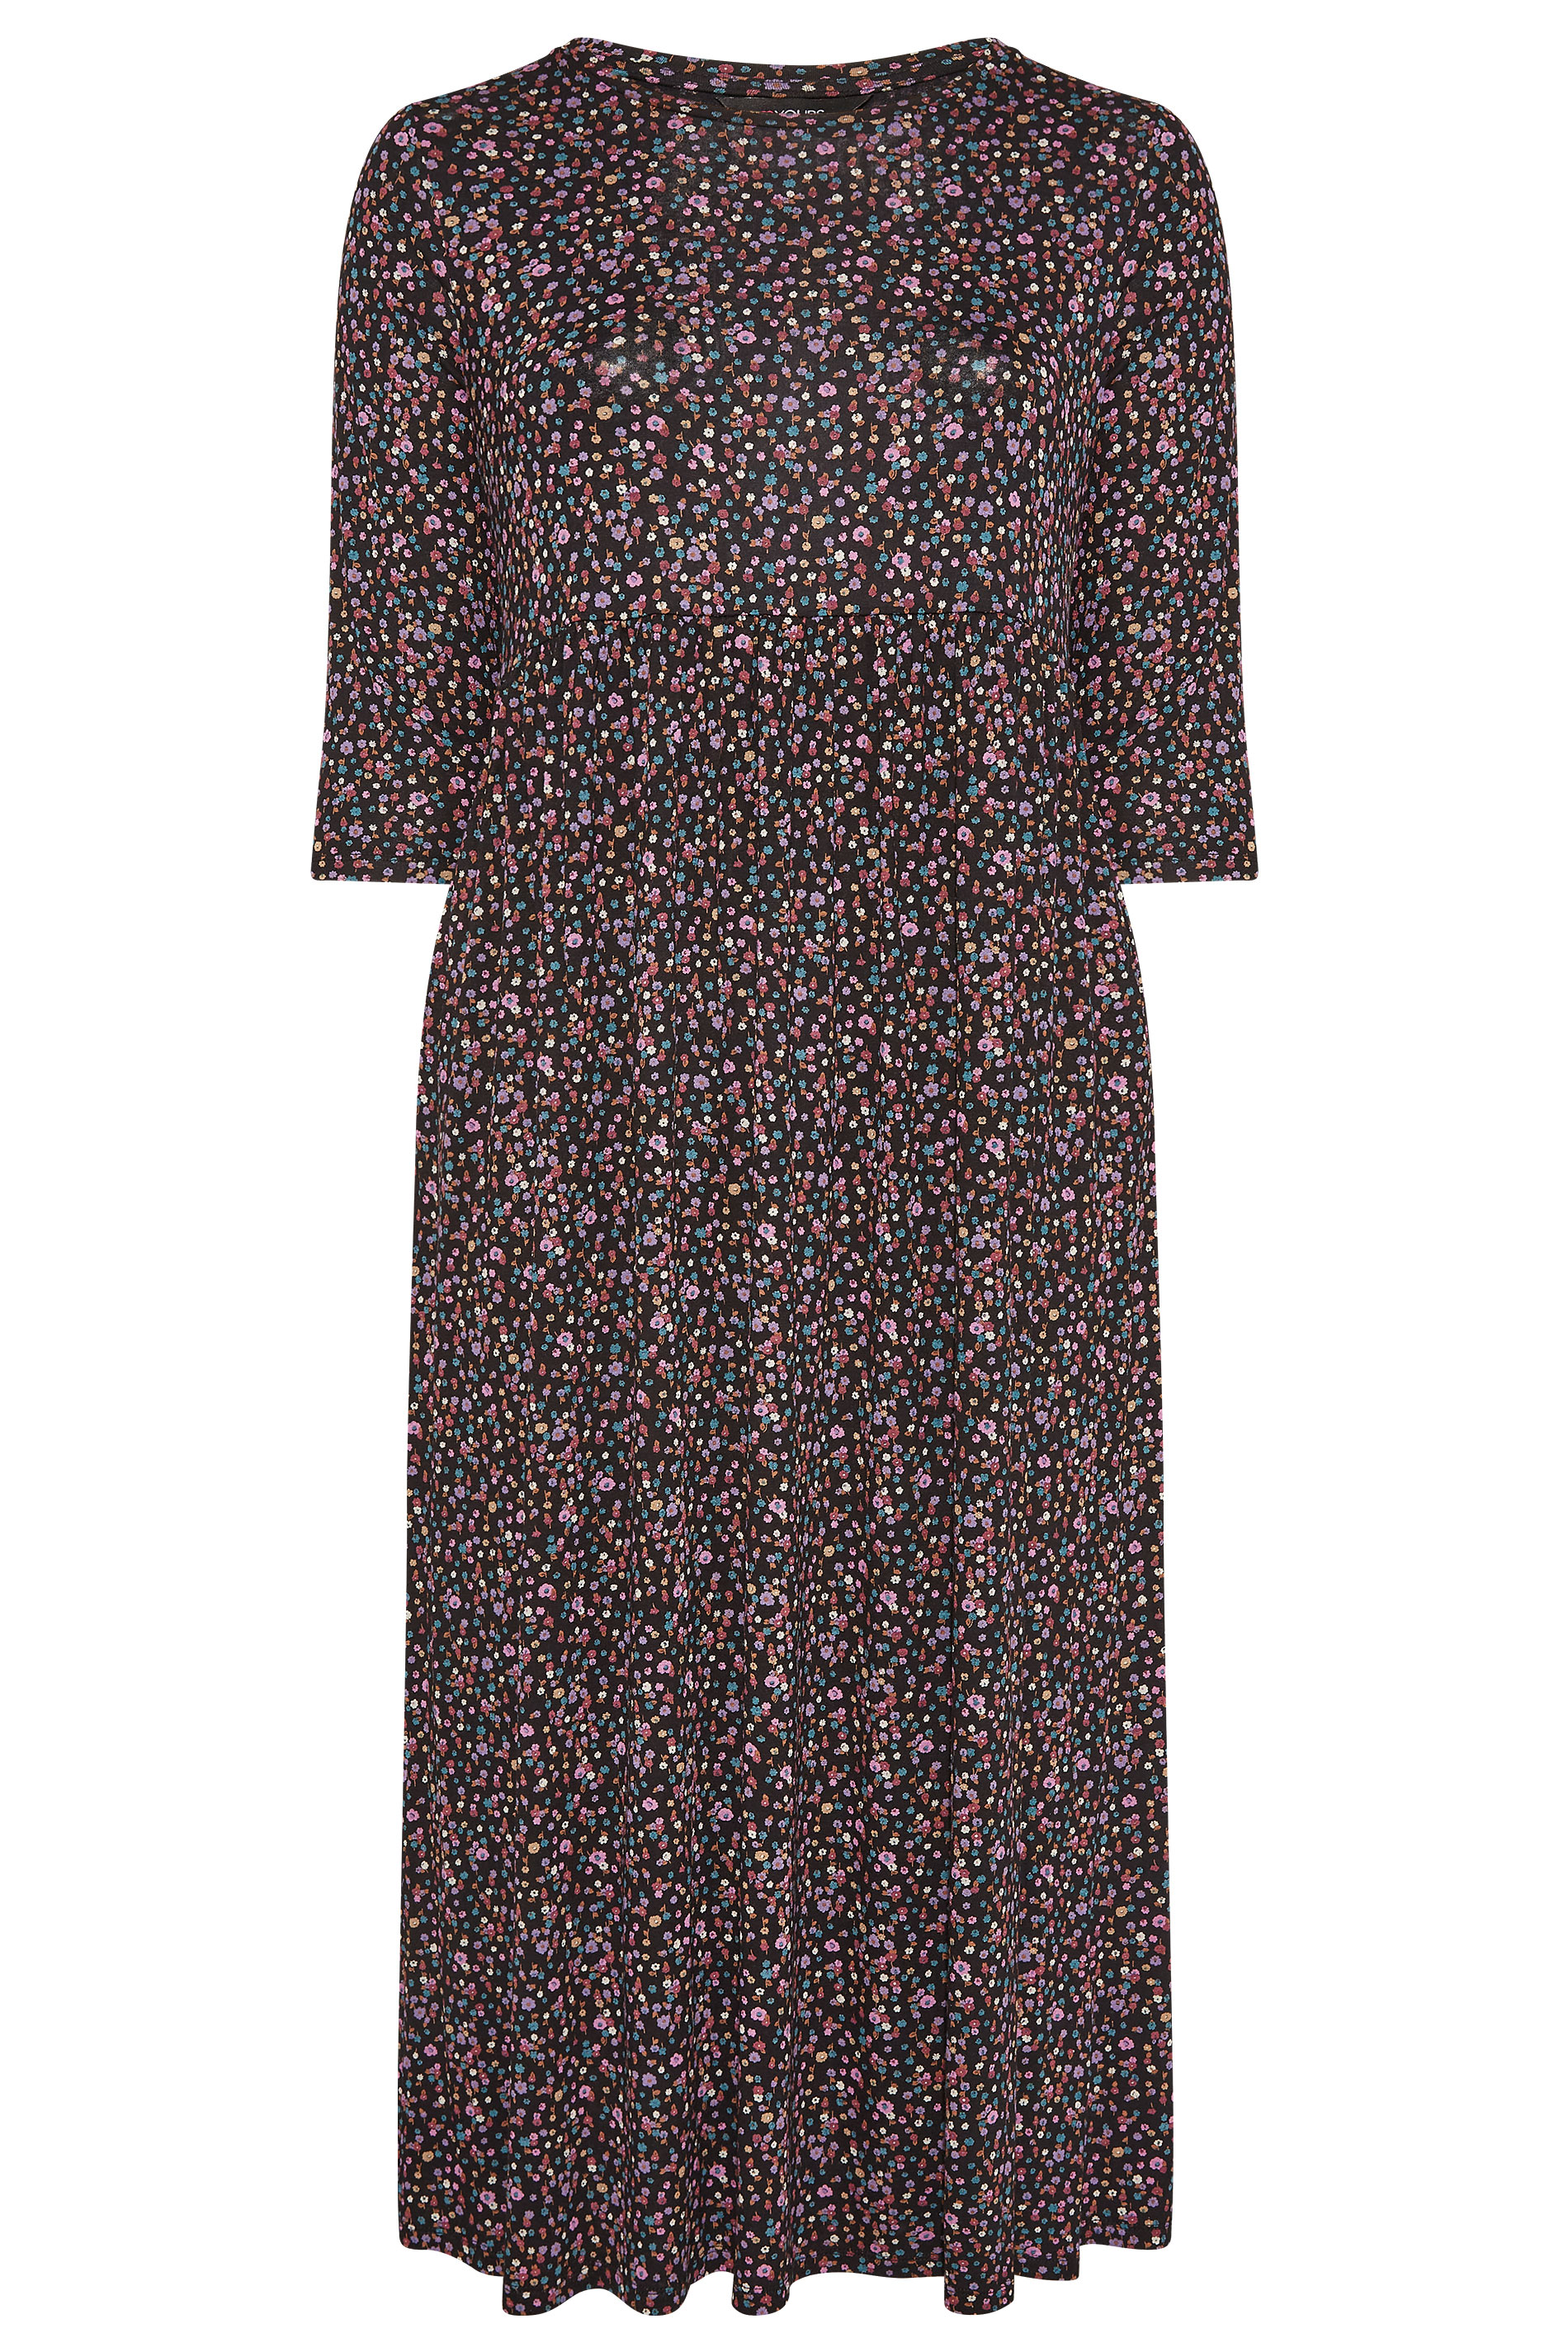 Robes Grande Taille Grande taille  Robes Imprimé Floral | Robe Midi Noire Petites Fleurs en Jersey - VJ57449